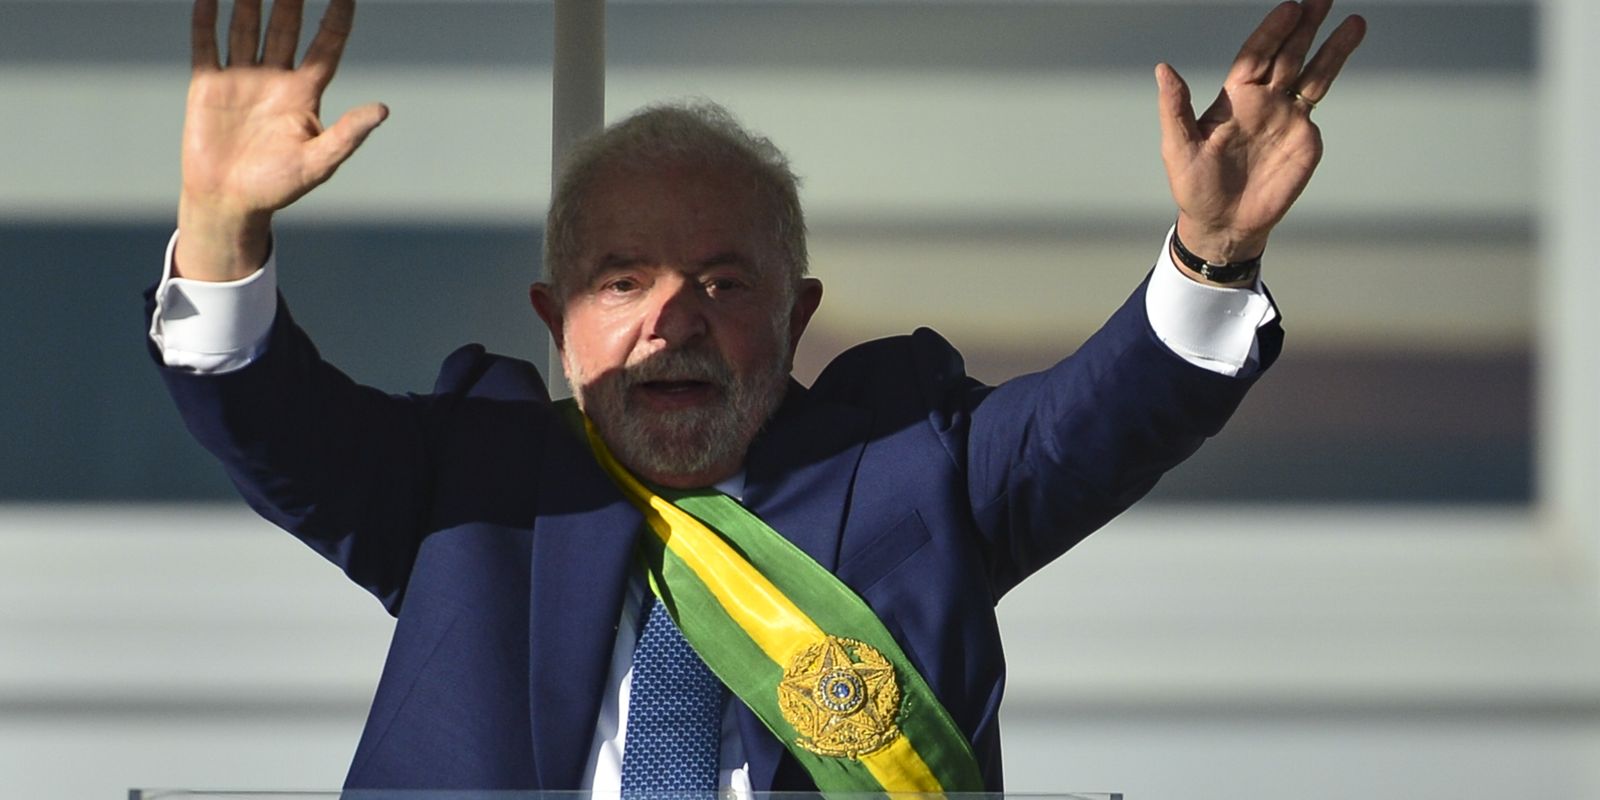 Au Planalto, Lula reçoit les salutations des chefs d’État étrangers